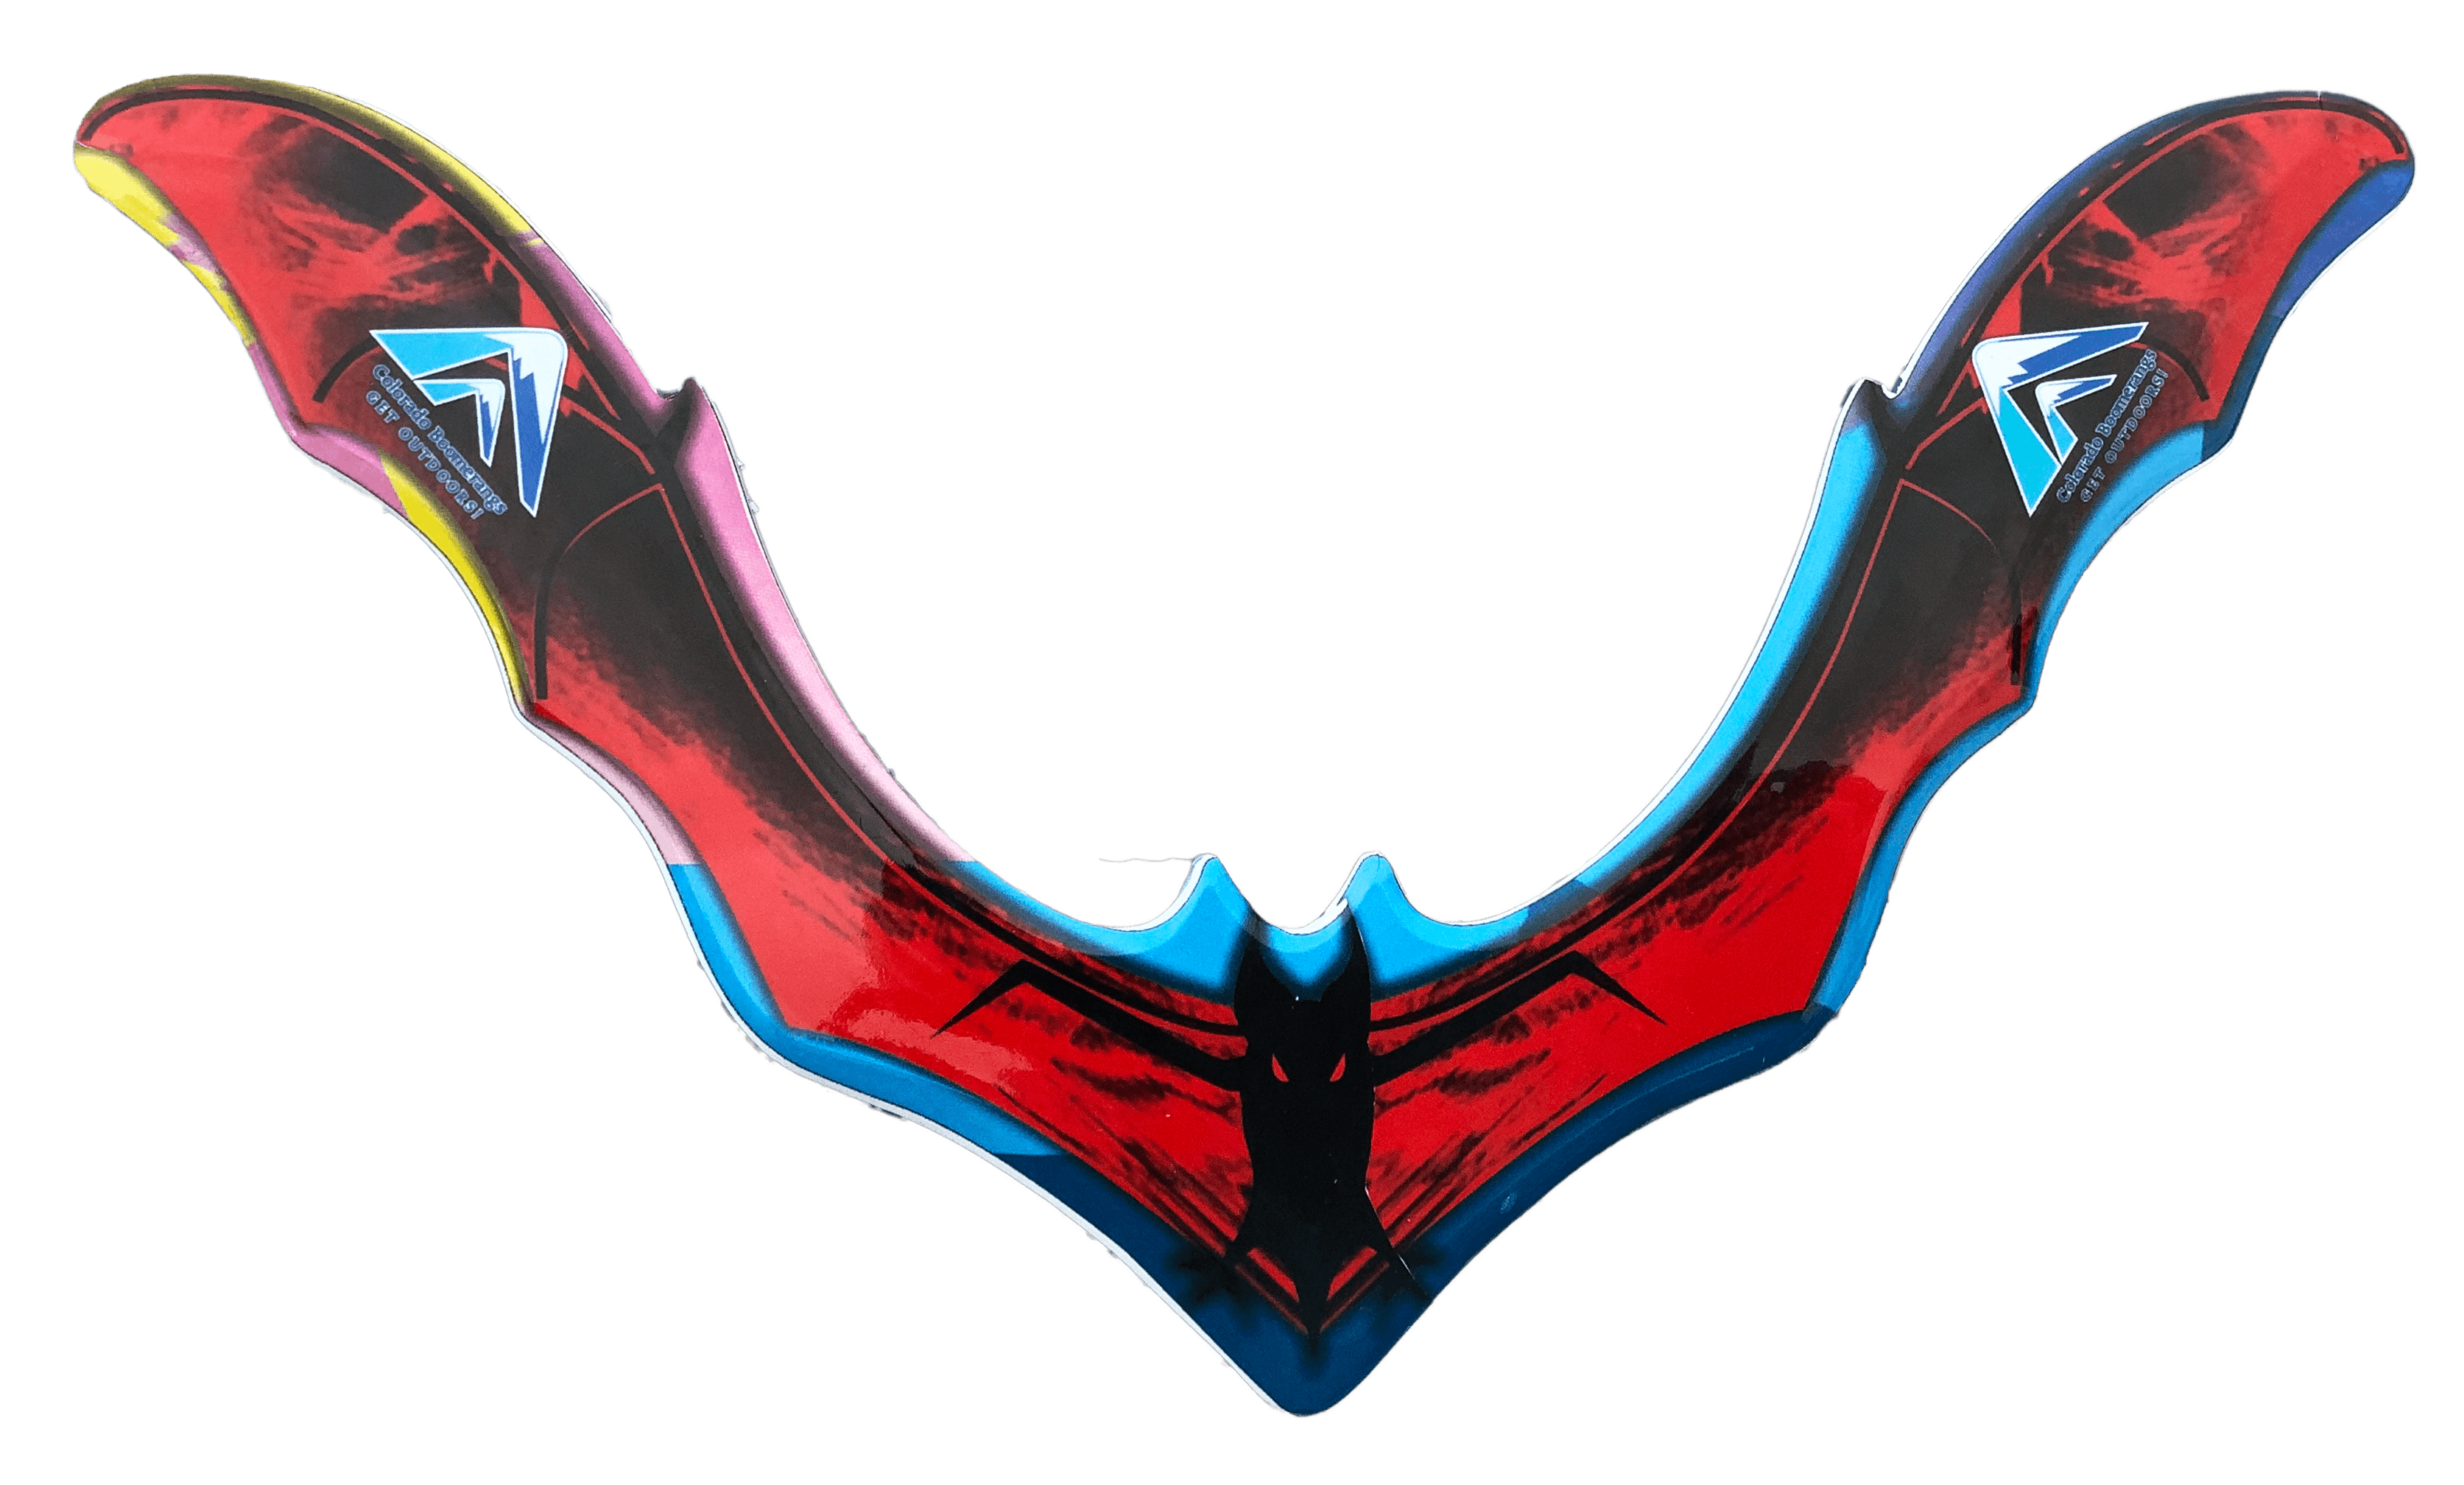 Batarang Red Boomerang